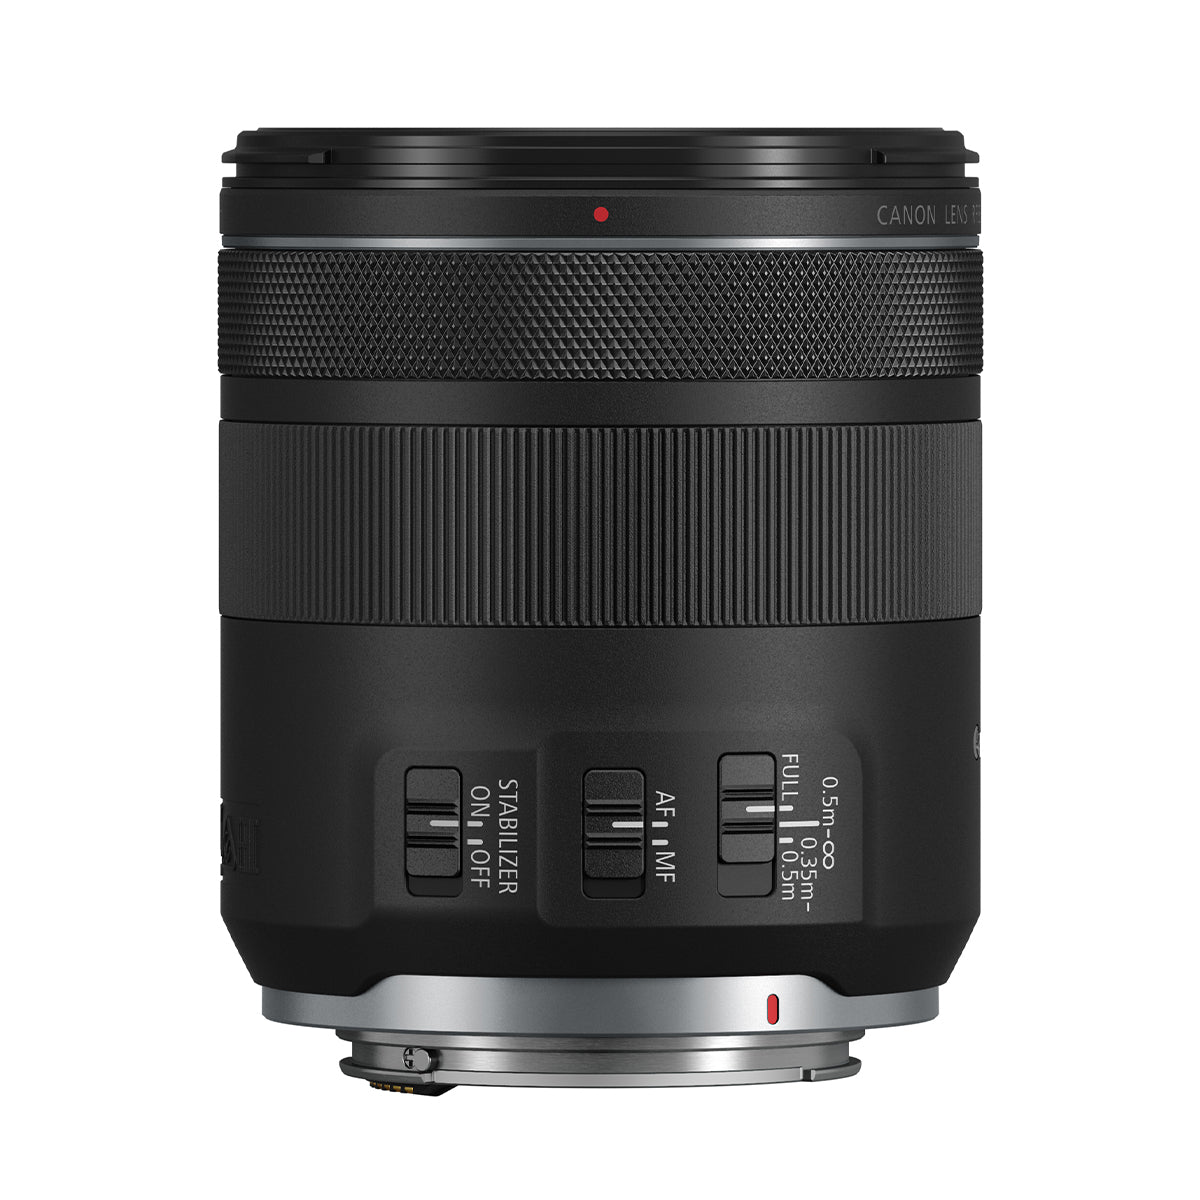 Canon RF 85mm F2 Macro IS STM Lens